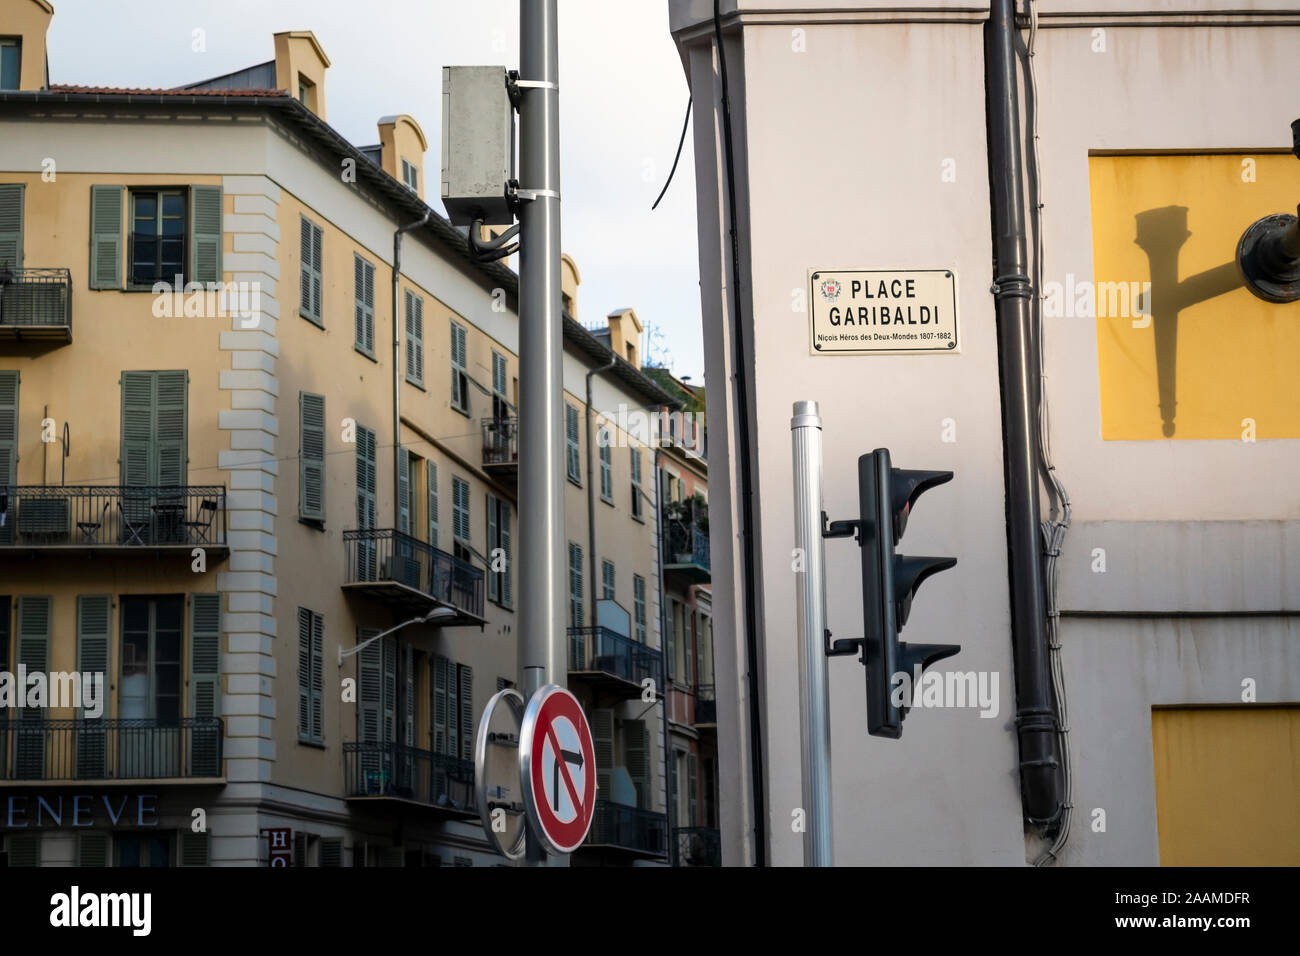 Eine Straße marker Zeichen für die beliebten Place Garibaldi in der Nähe der Altstadt von Nizza, Frankreich. Stockfoto